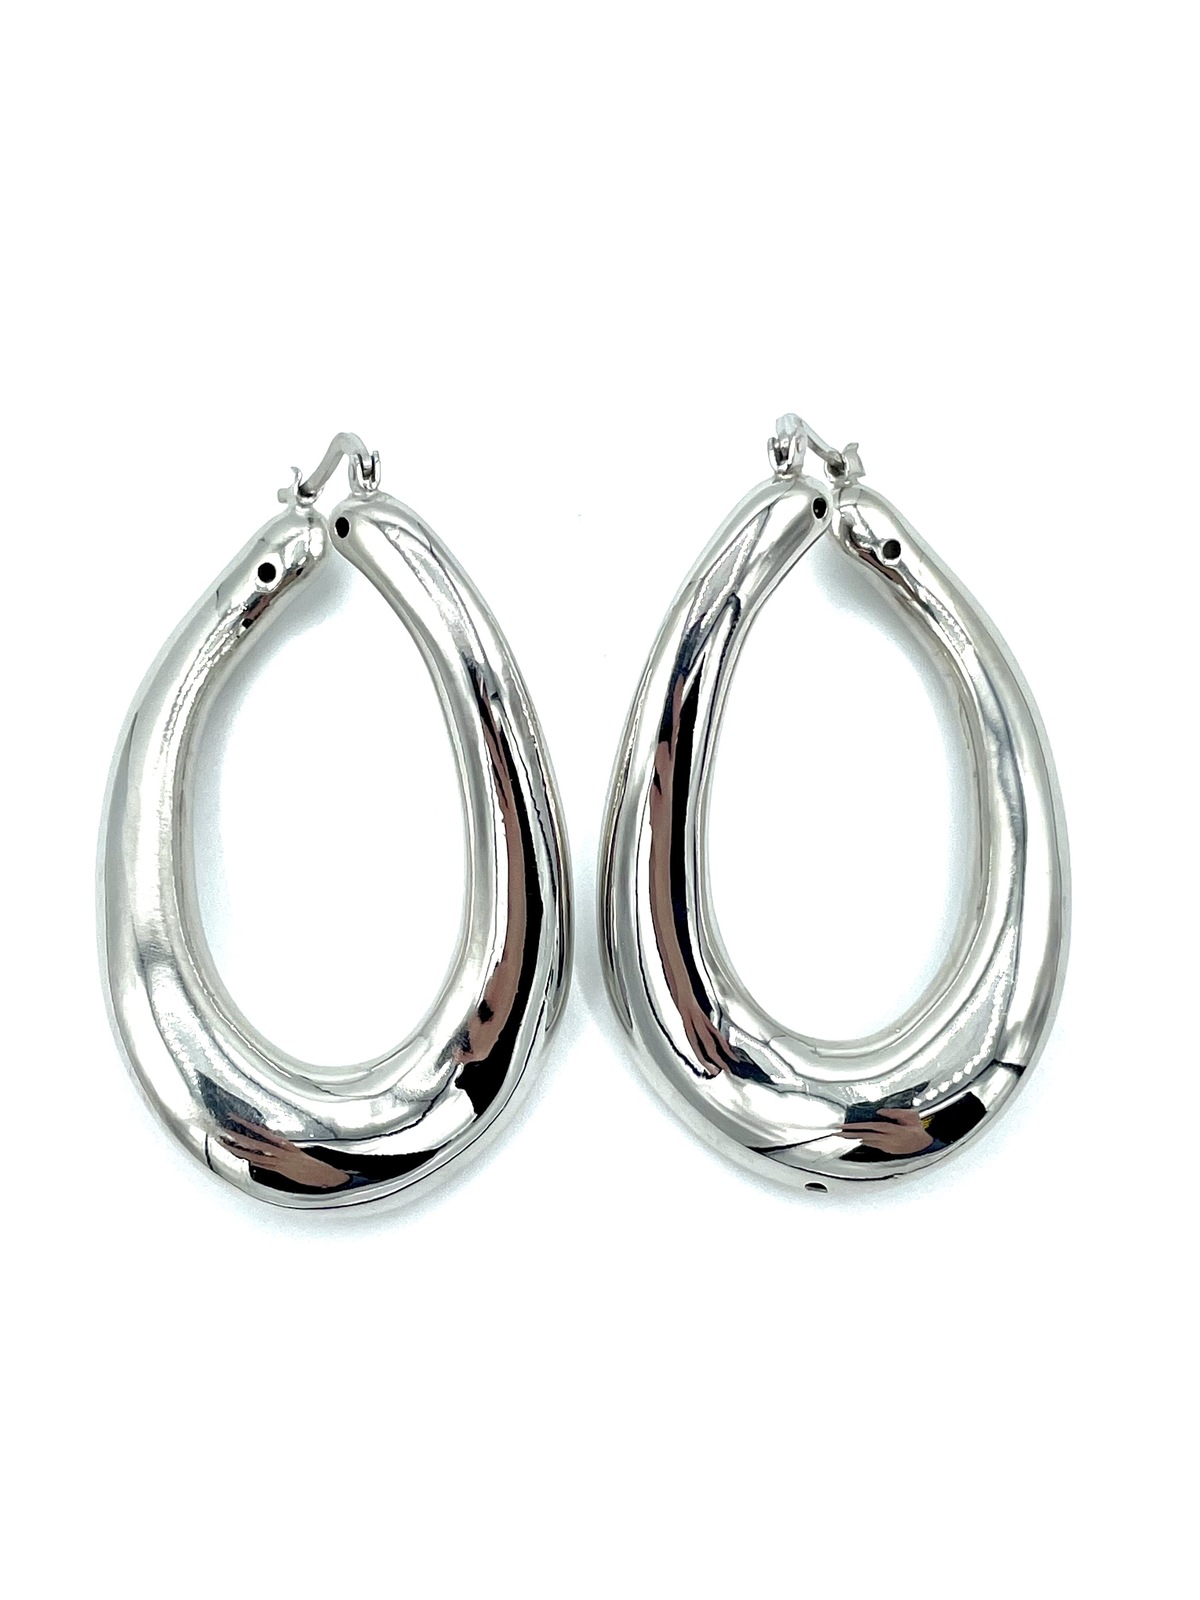 Earrings in silver tit. 925m